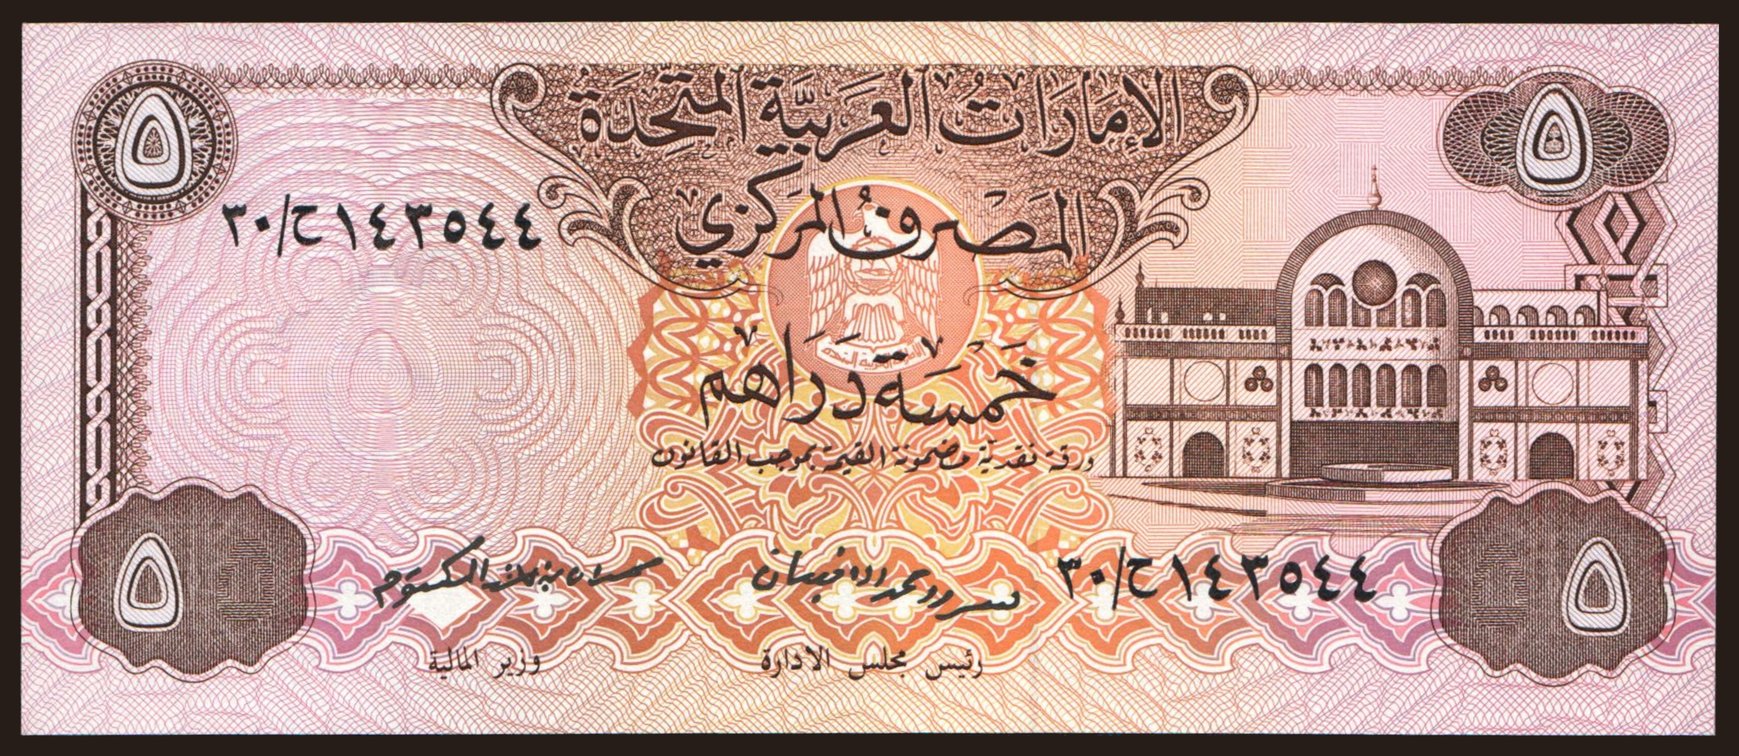 14000 дирхам в рубли. Бумажные деньги арабских Эмиратов. Дирхам банкнота. Дирхам купюры бумажные. 10 Дирхам банкнота.